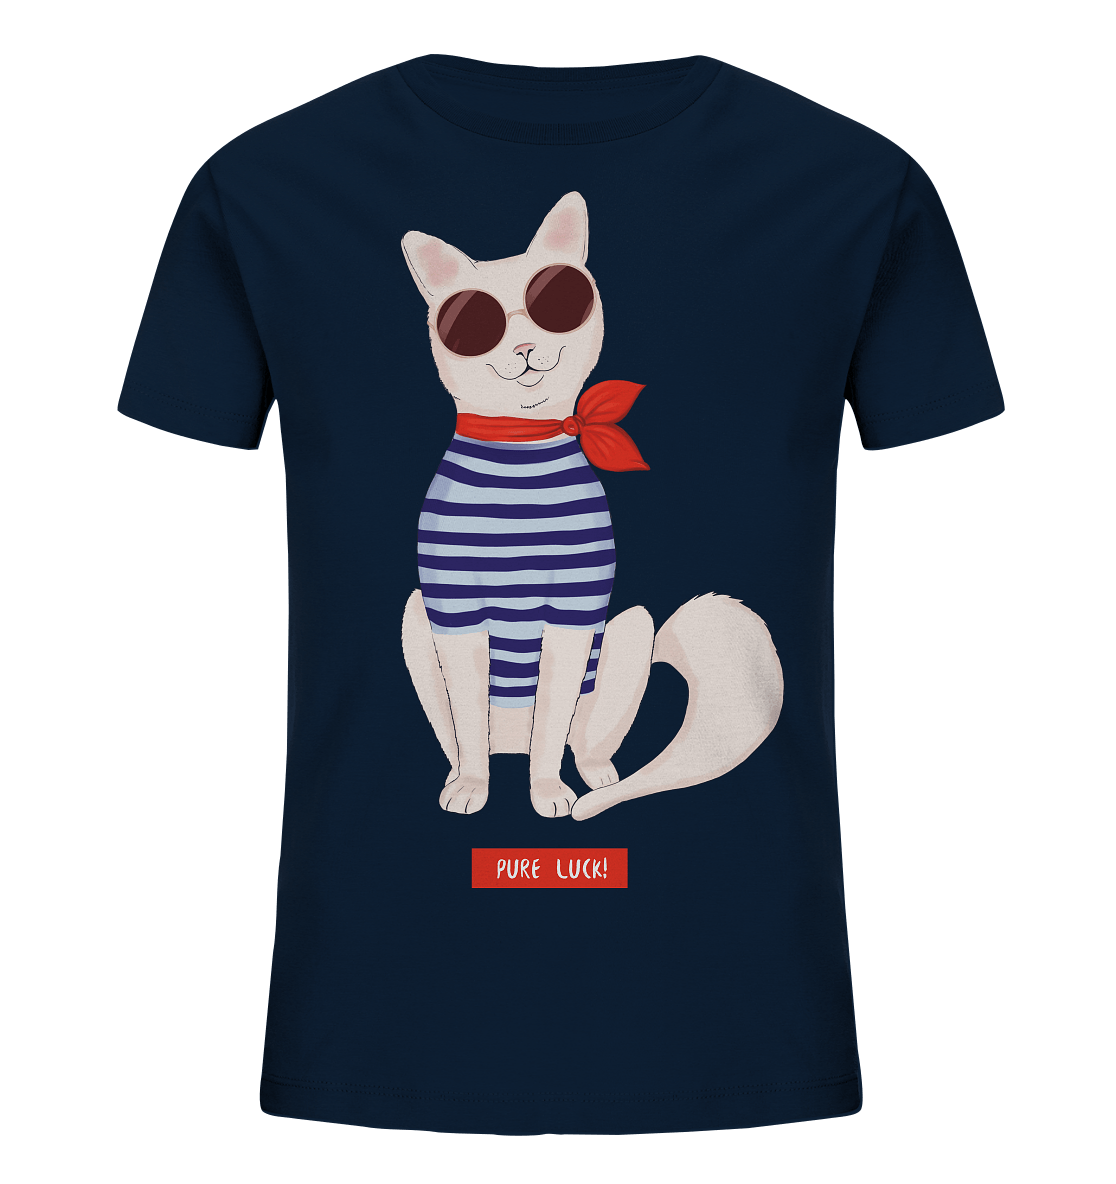 Maritime Katze Comic Kinder Shirt in navy blau mit Katze in Strefenhemd mit Sonnenbrille Print von Bloominic